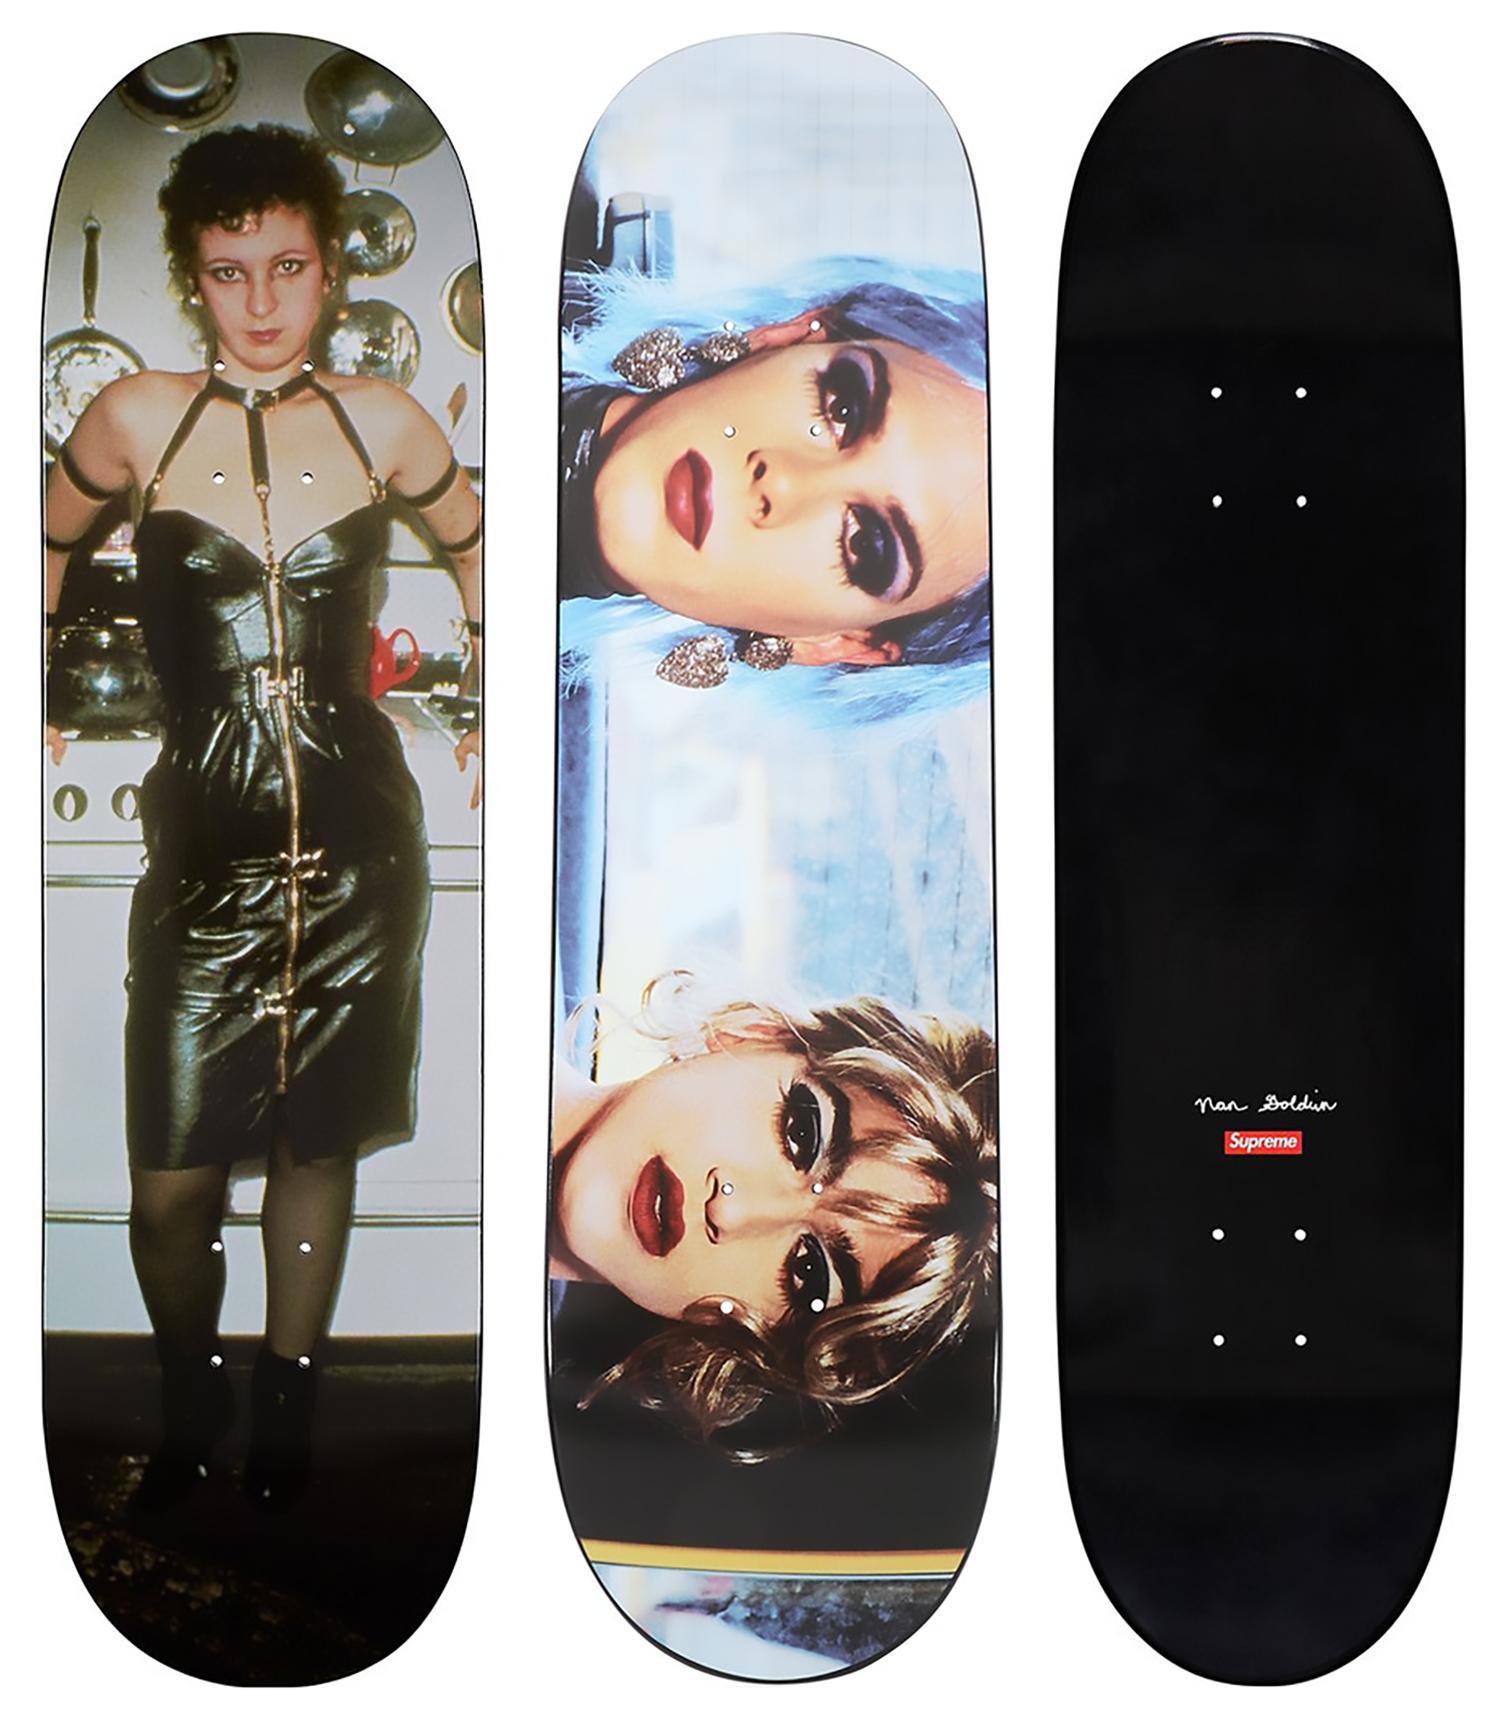 Nan Goldin Supreme Skateboard Decks, 2018 (Satz von 2):
- Misty und Jimmy Paulette in einem Taxi, (NYC 1991)
- Nan als Domina (Cambridge MA 1978)

2er-Set Skateboard in limitierter Auflage von Nan Goldin, herausgegeben von Supreme New York im Jahr